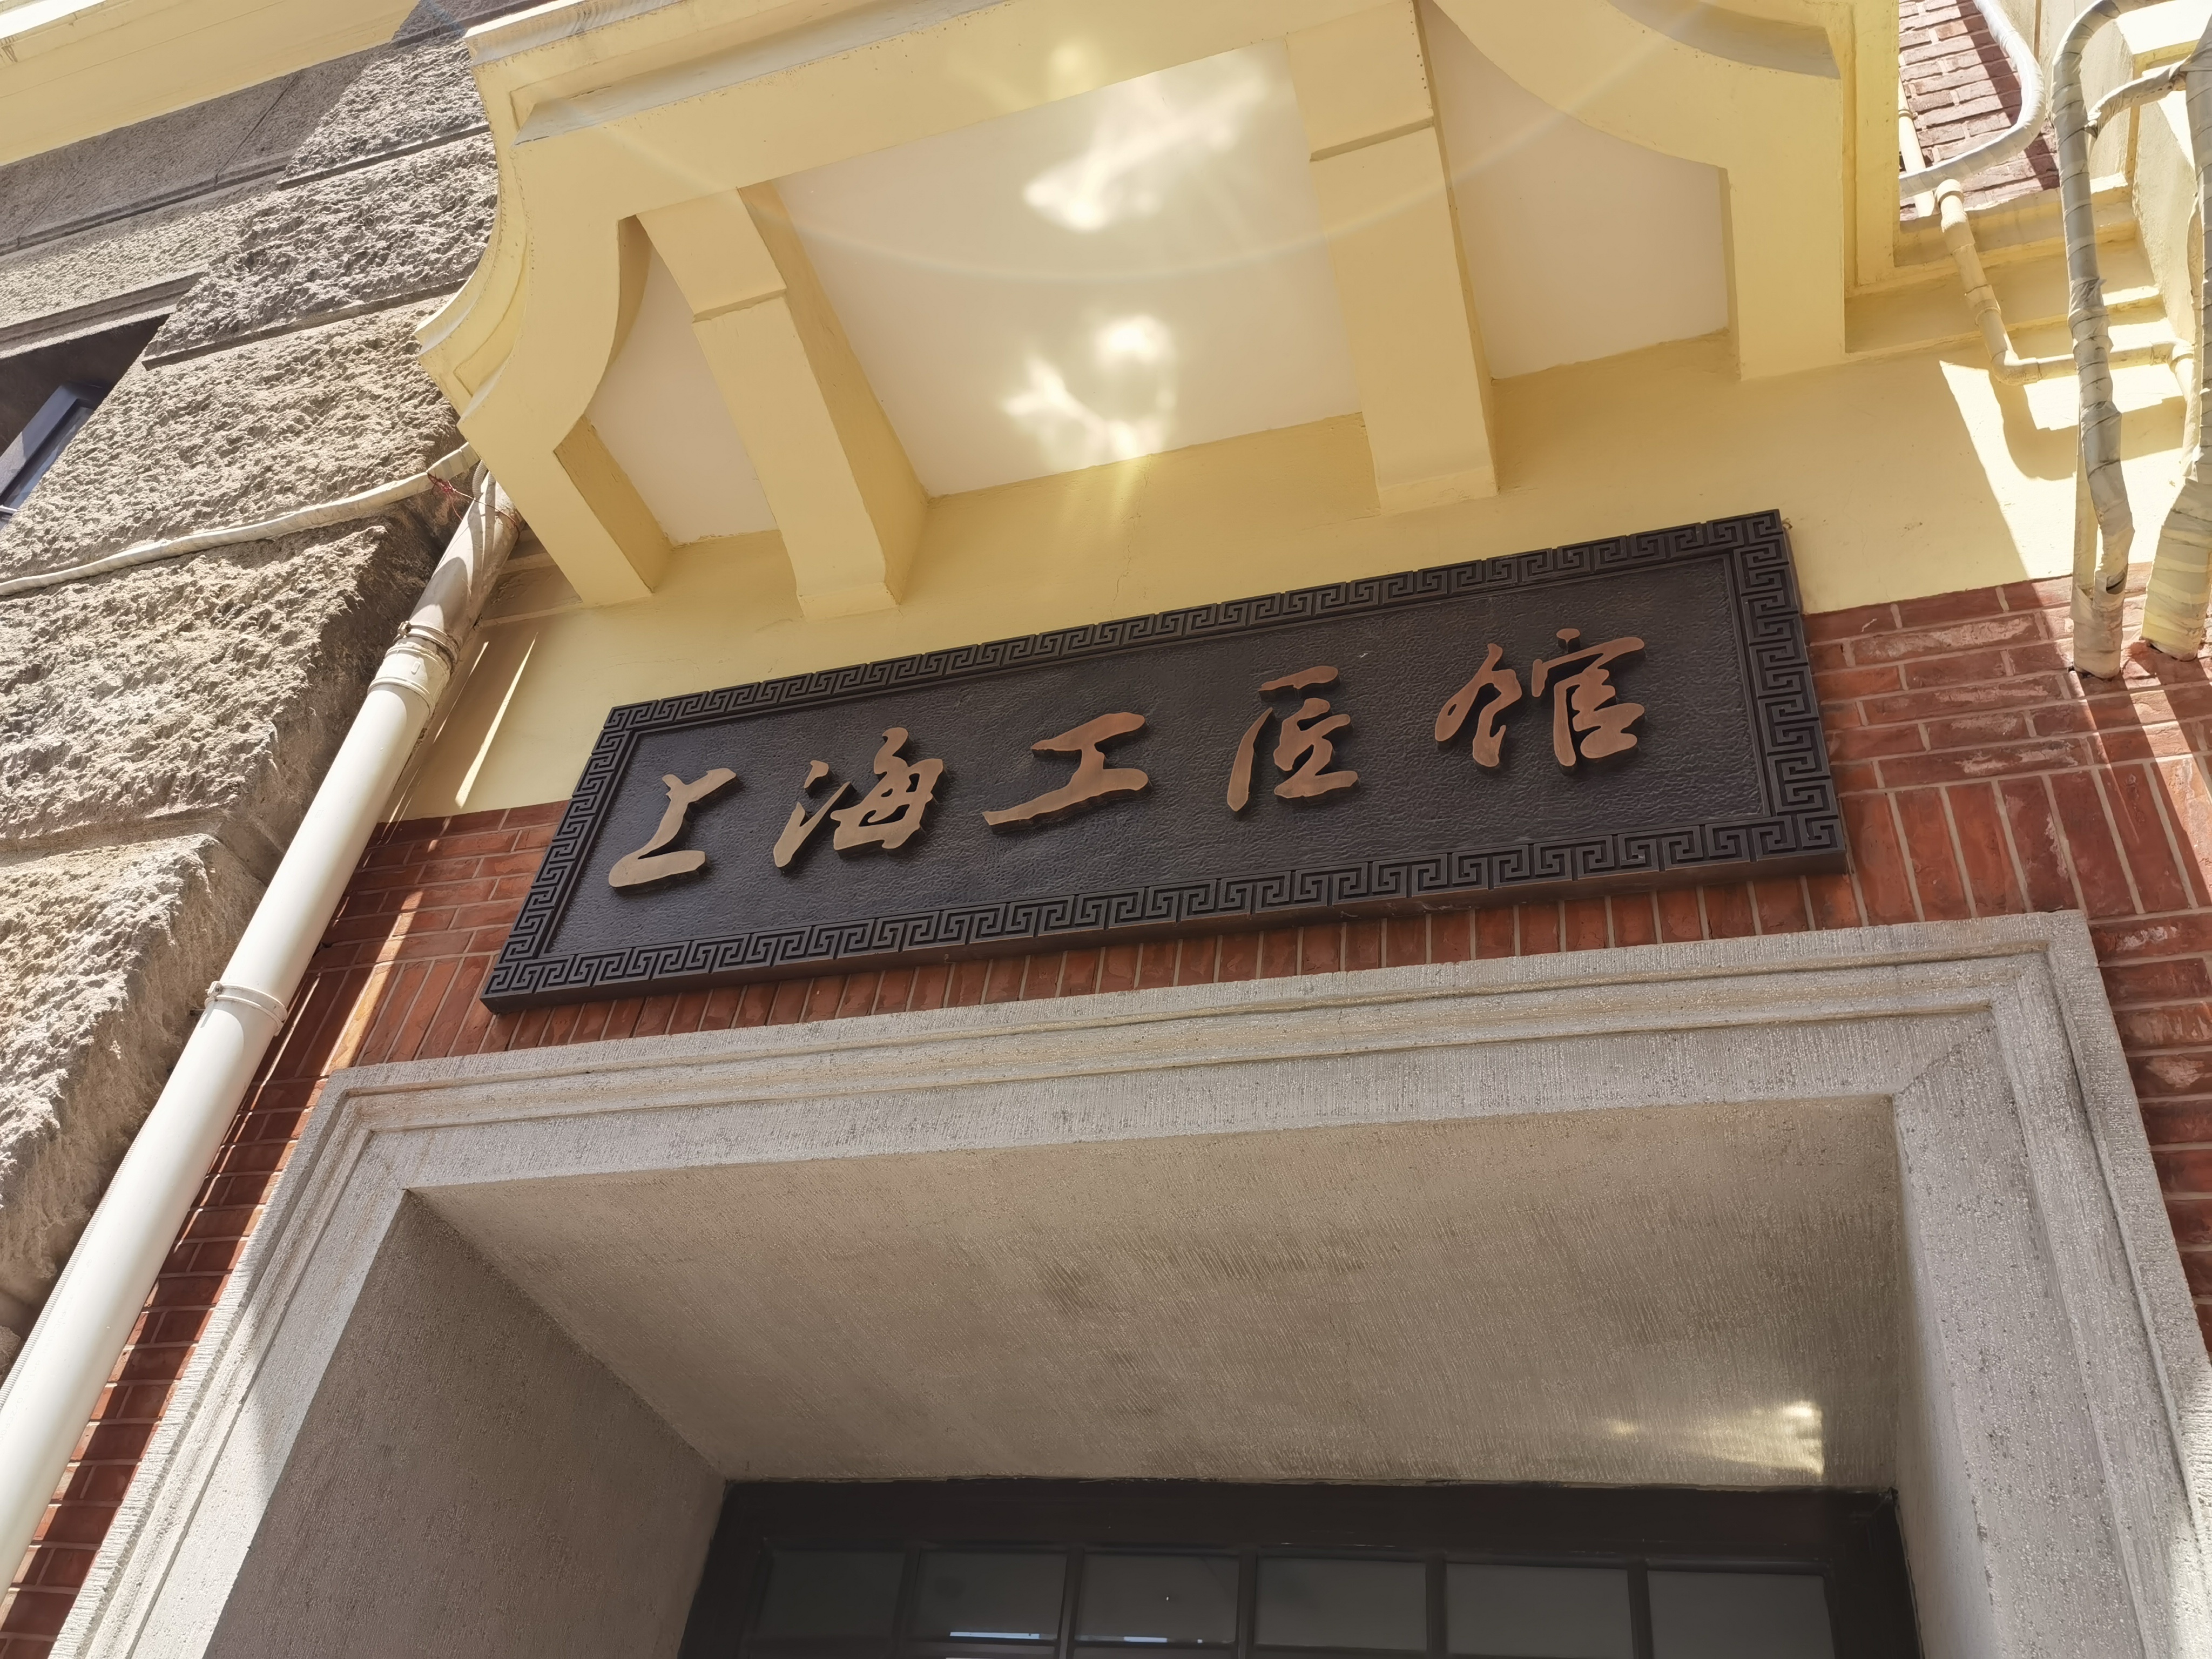 上海工匠馆,上海百年制造历史,上海工匠馆的展览